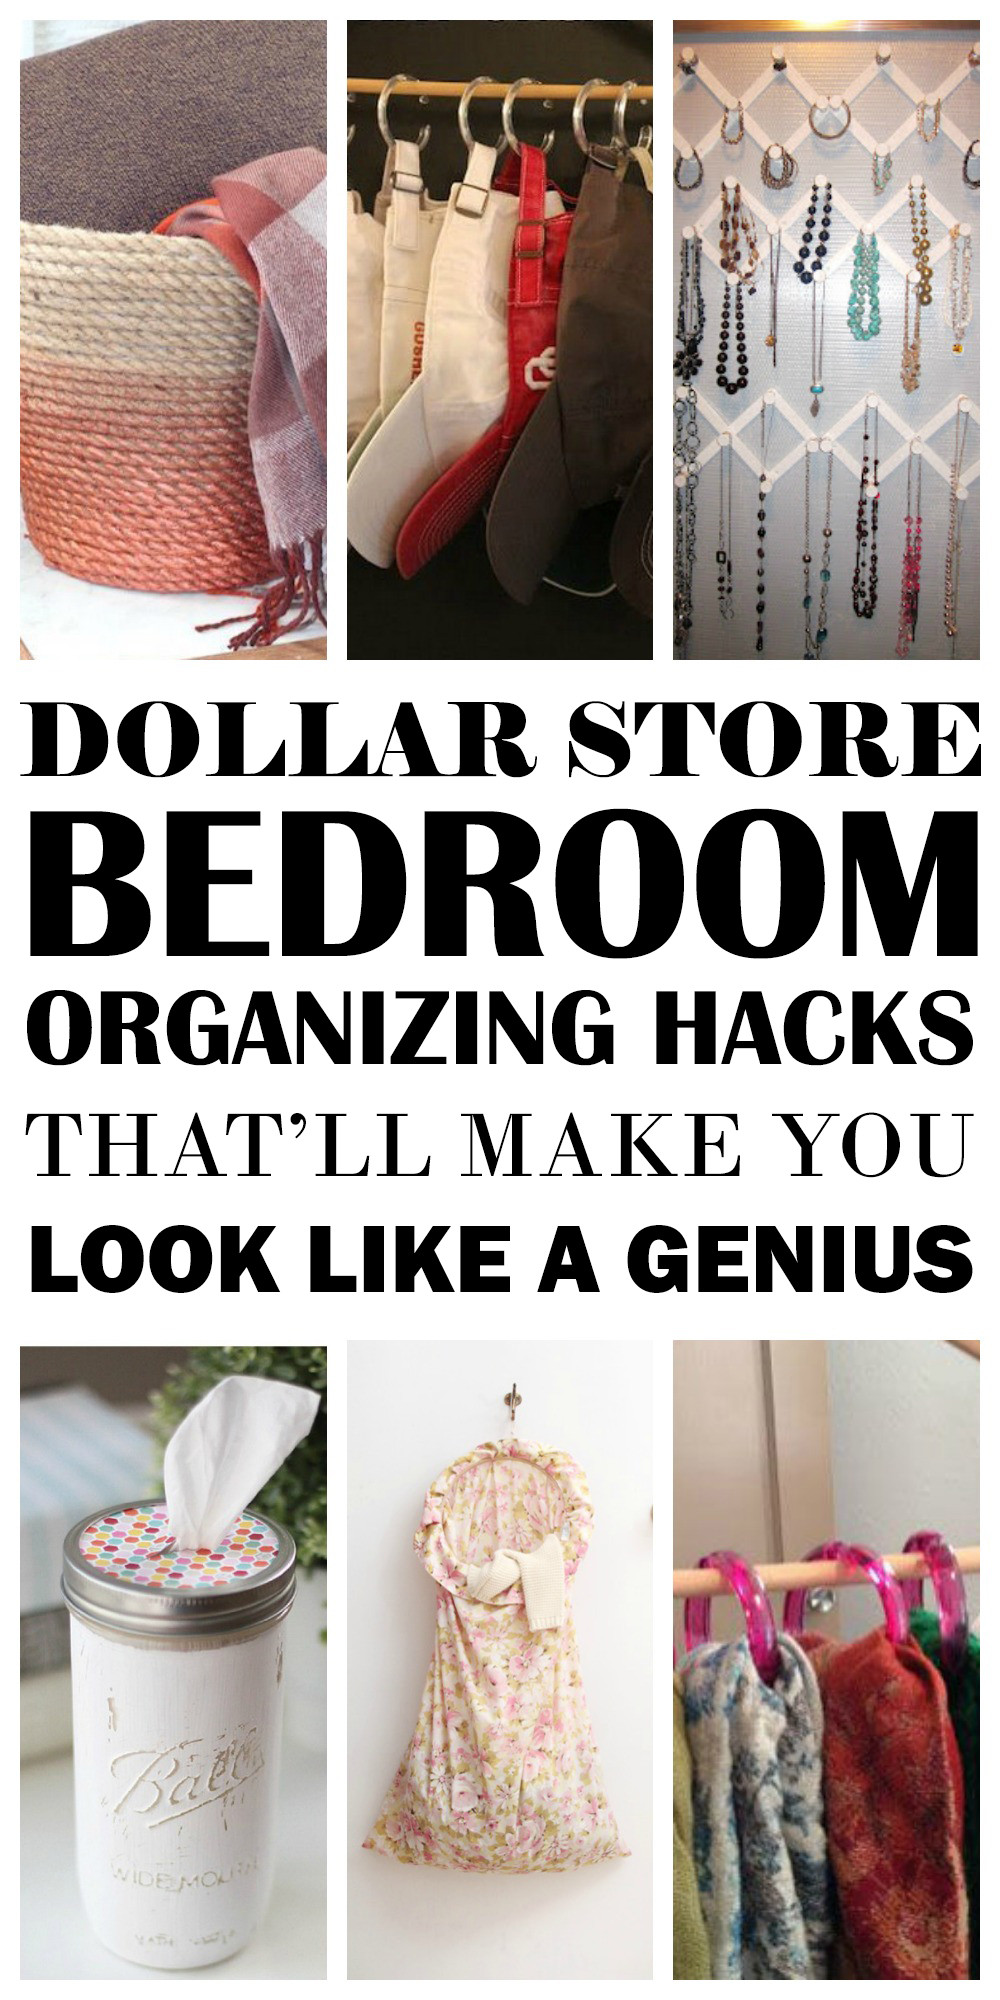 Bedroom Organization Hacks
 The Best Dollar Store Bedroom Organization Hacks THE